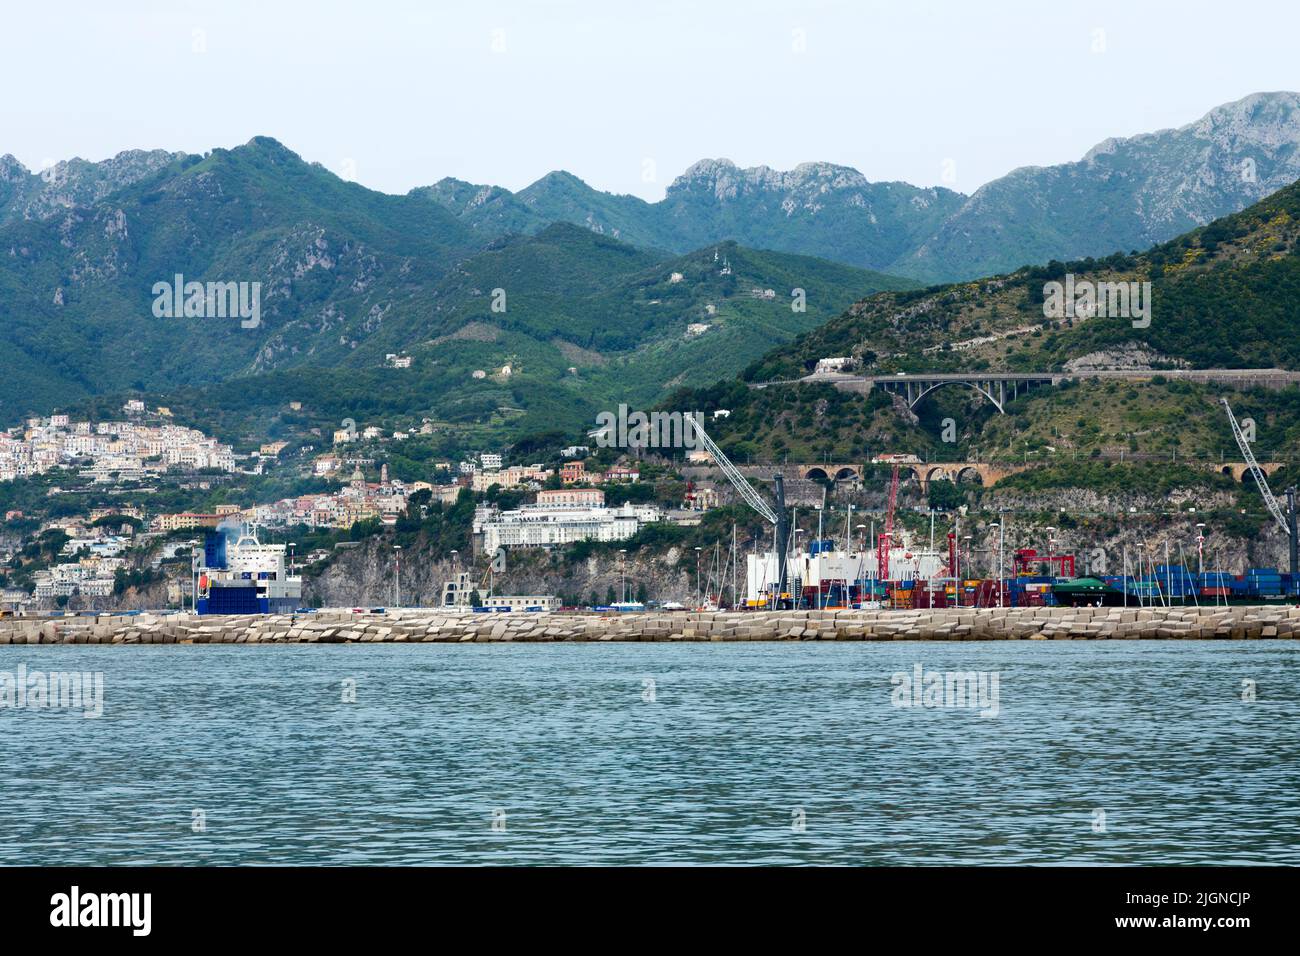 Ships moored at Salerno, Italian Coastline, Italy Stock Photo